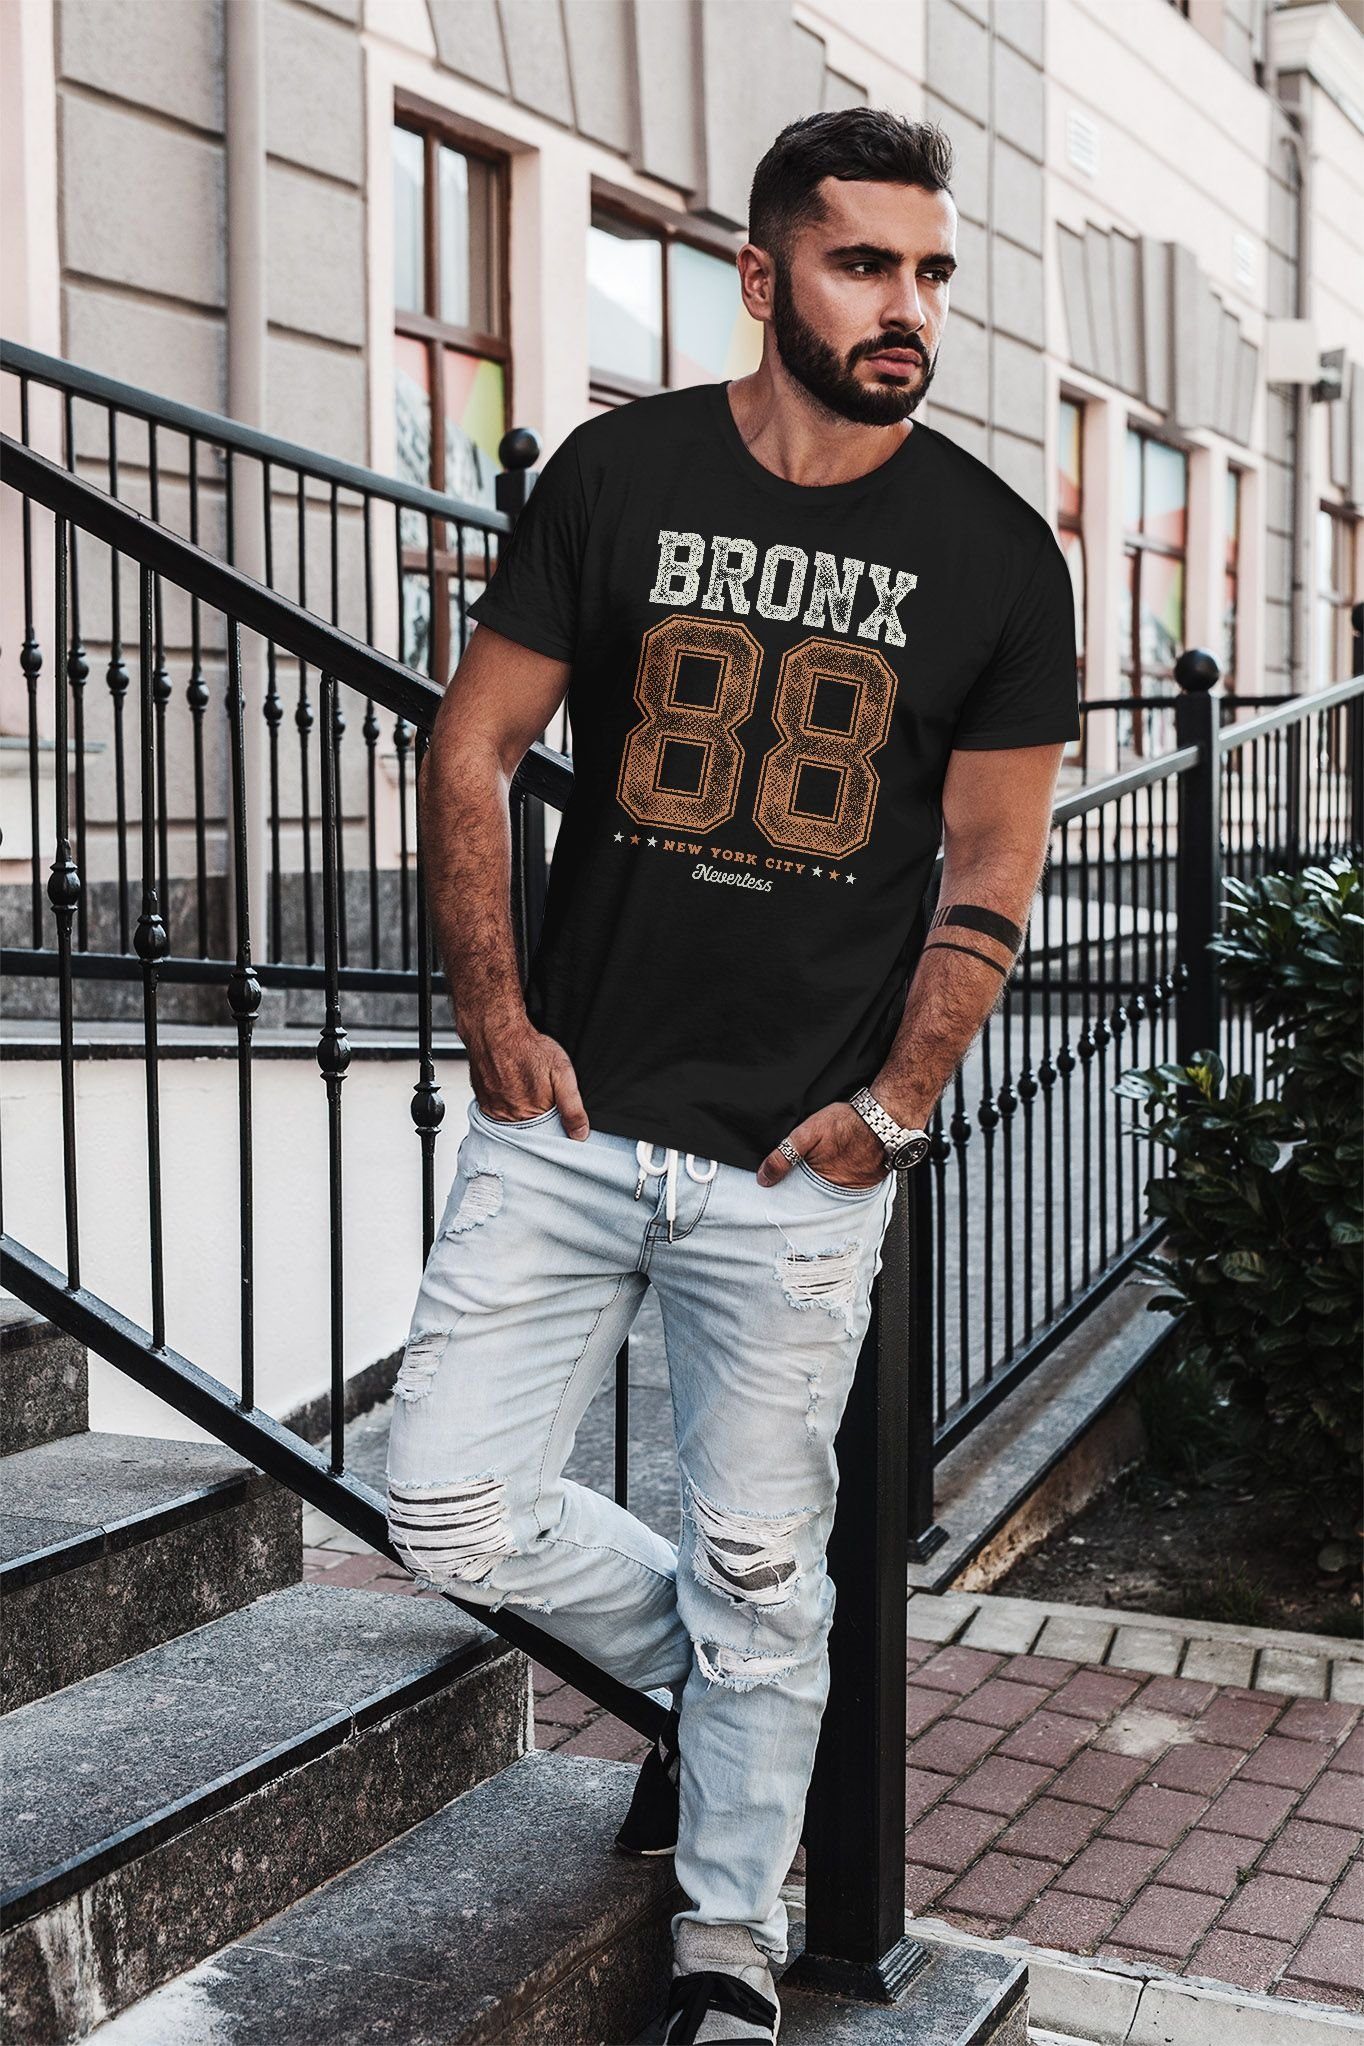 Fit Print T-Shirt 88 City Neverless Print-Shirt Bronx mit Slim Aufdruck Herren New York Print Neverless®